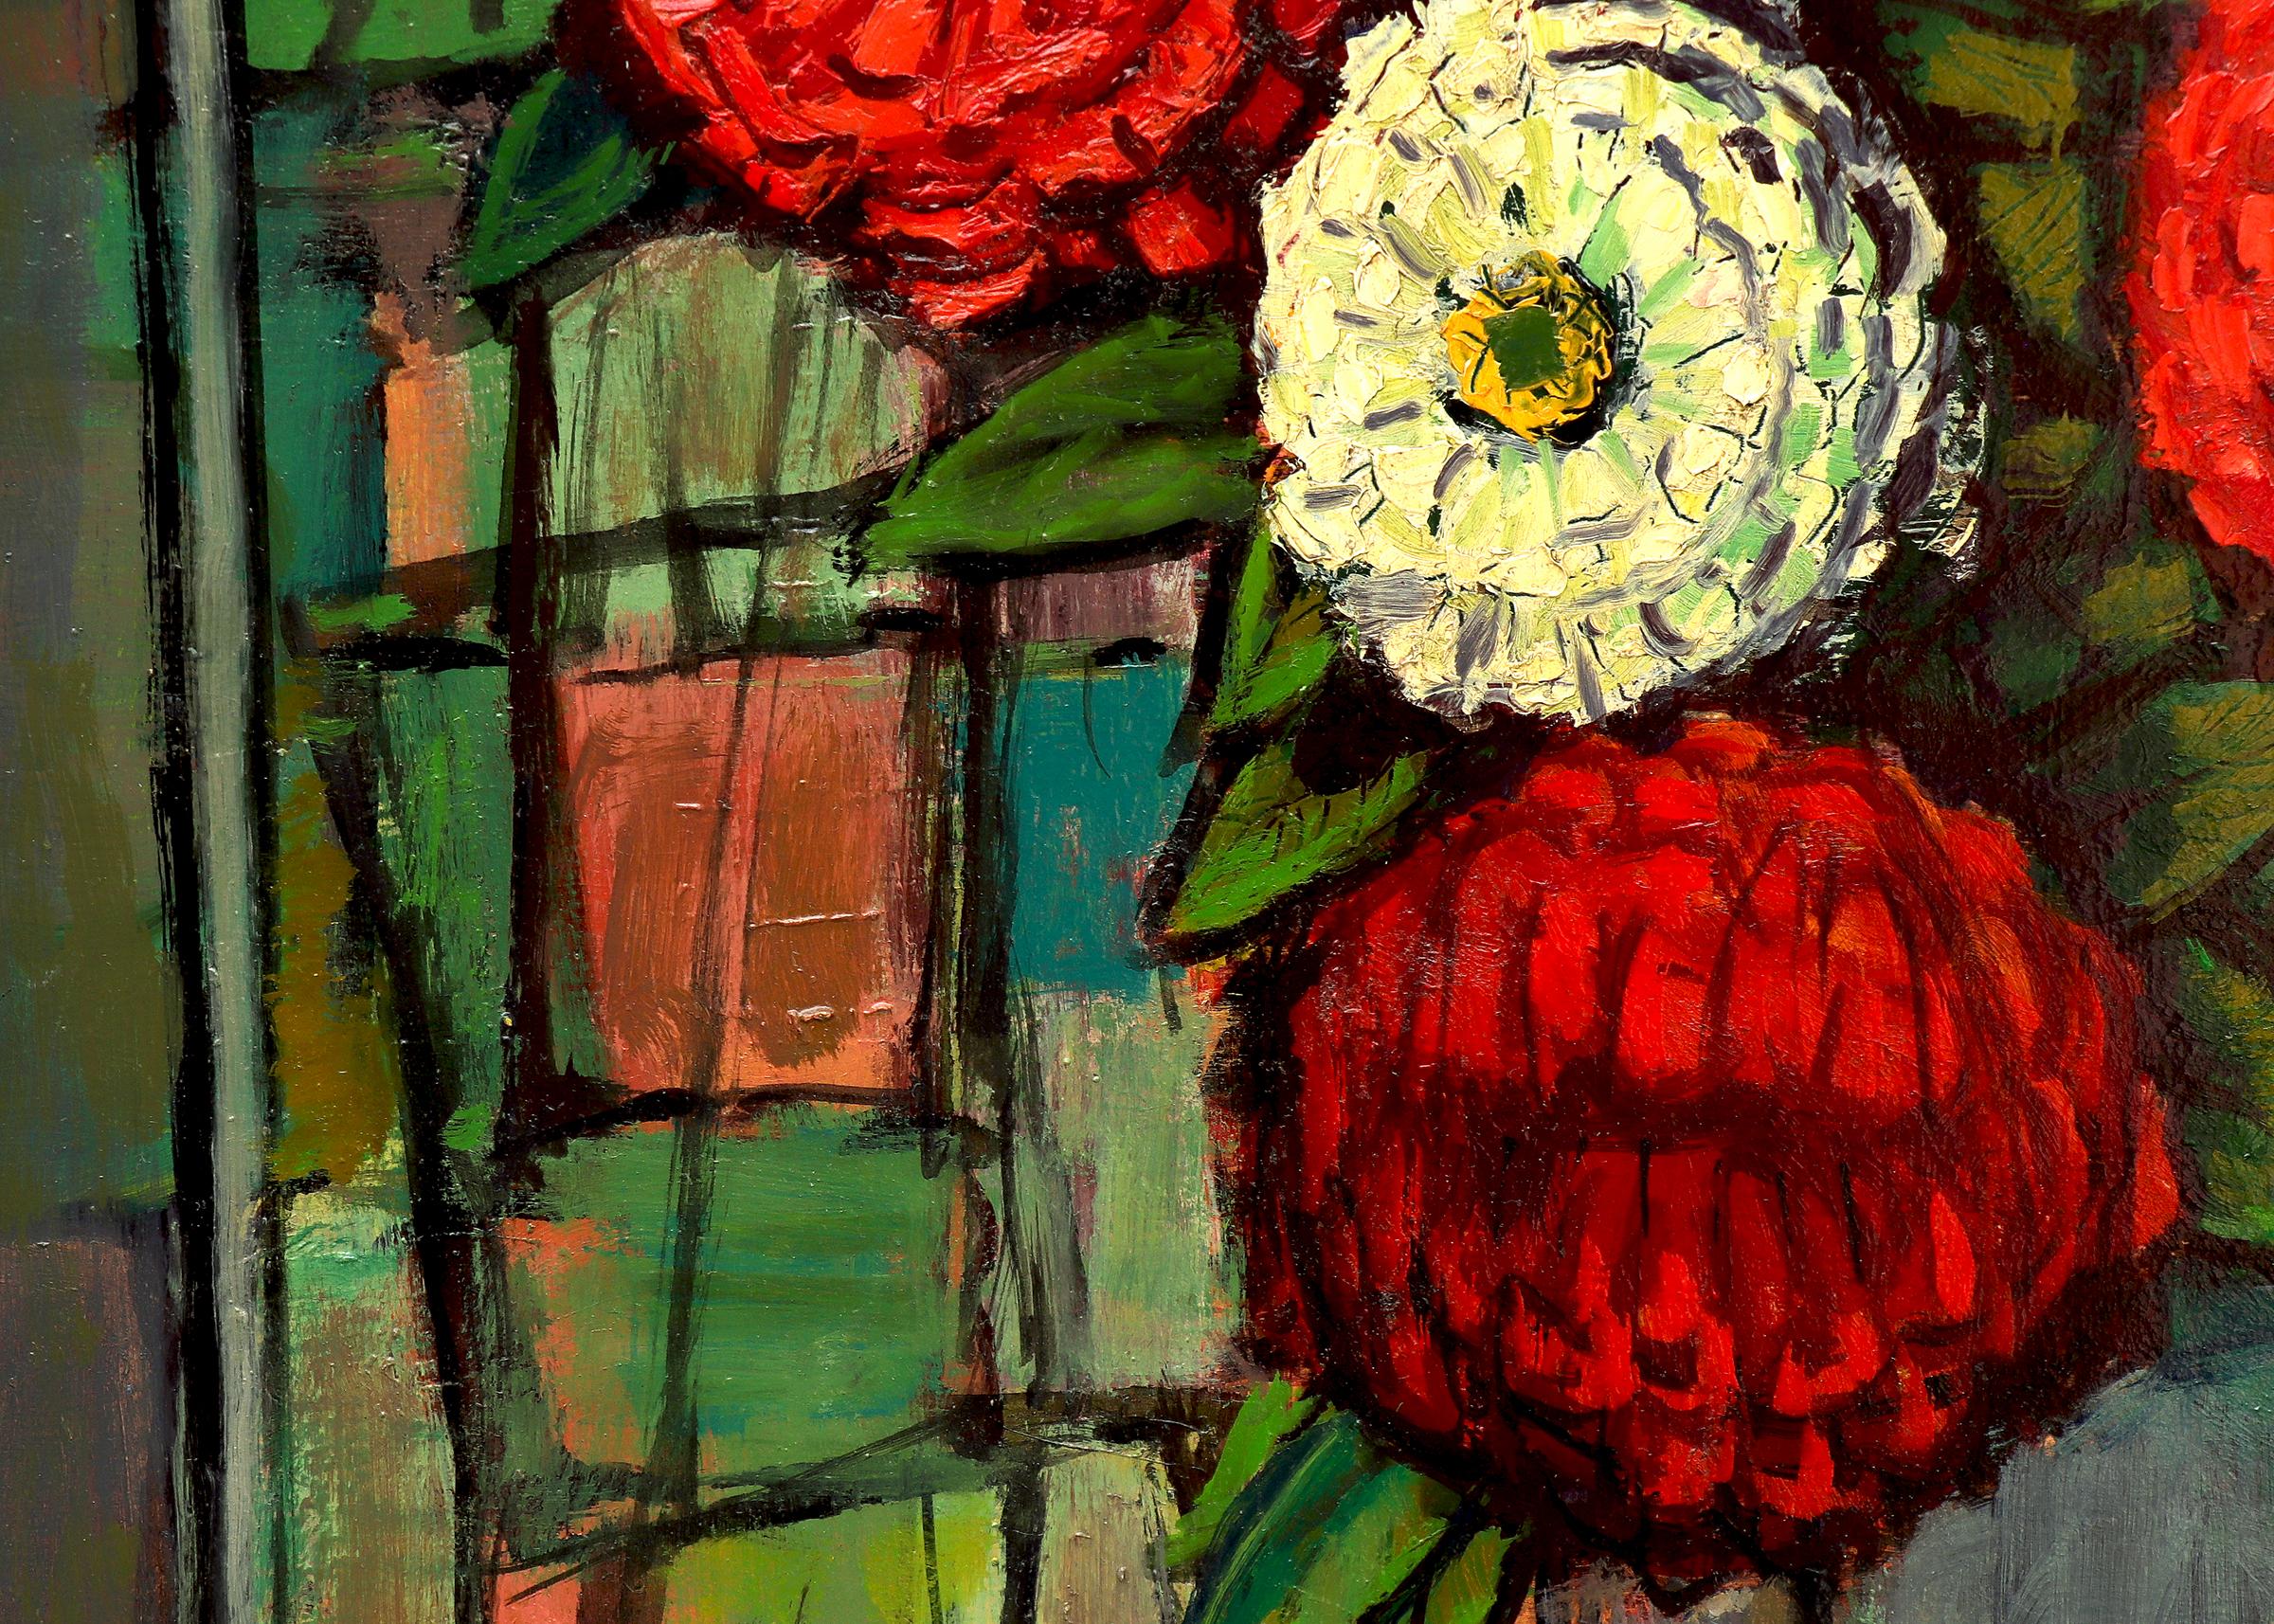 Peinture à l'huile sur carton de Paul Kauvar Smith (1893-1977) représentant une nature morte de fleurs sur une table dans une scène d'intérieur avec un miroir en arrière-plan. Peinture moderniste américaine de nature morte avec zinnias et peintures